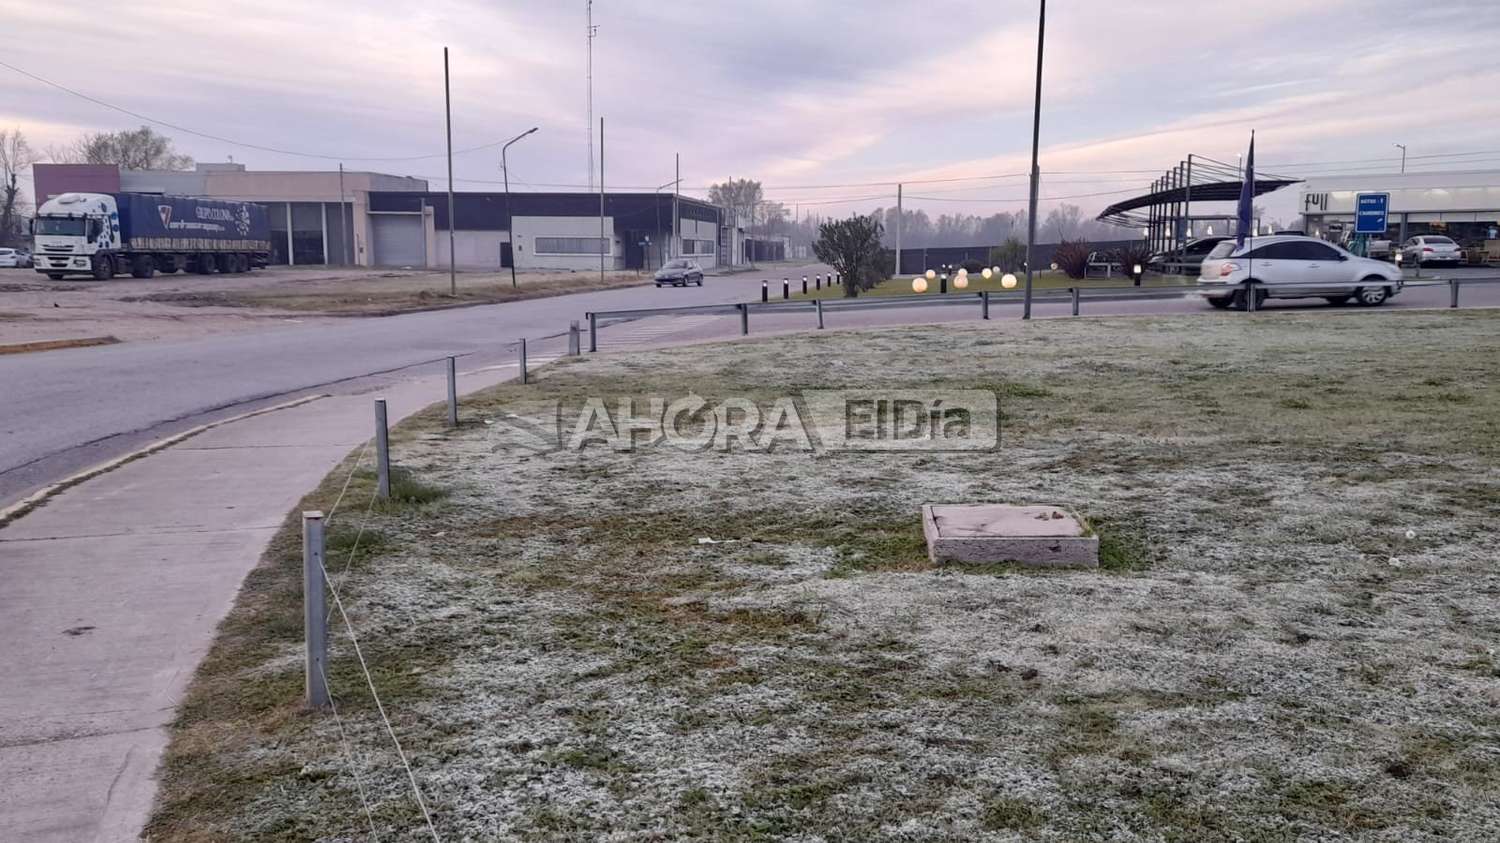 Alerta por frío extremo en Gualeguaychú: cómo estarán los últimos días de la semana